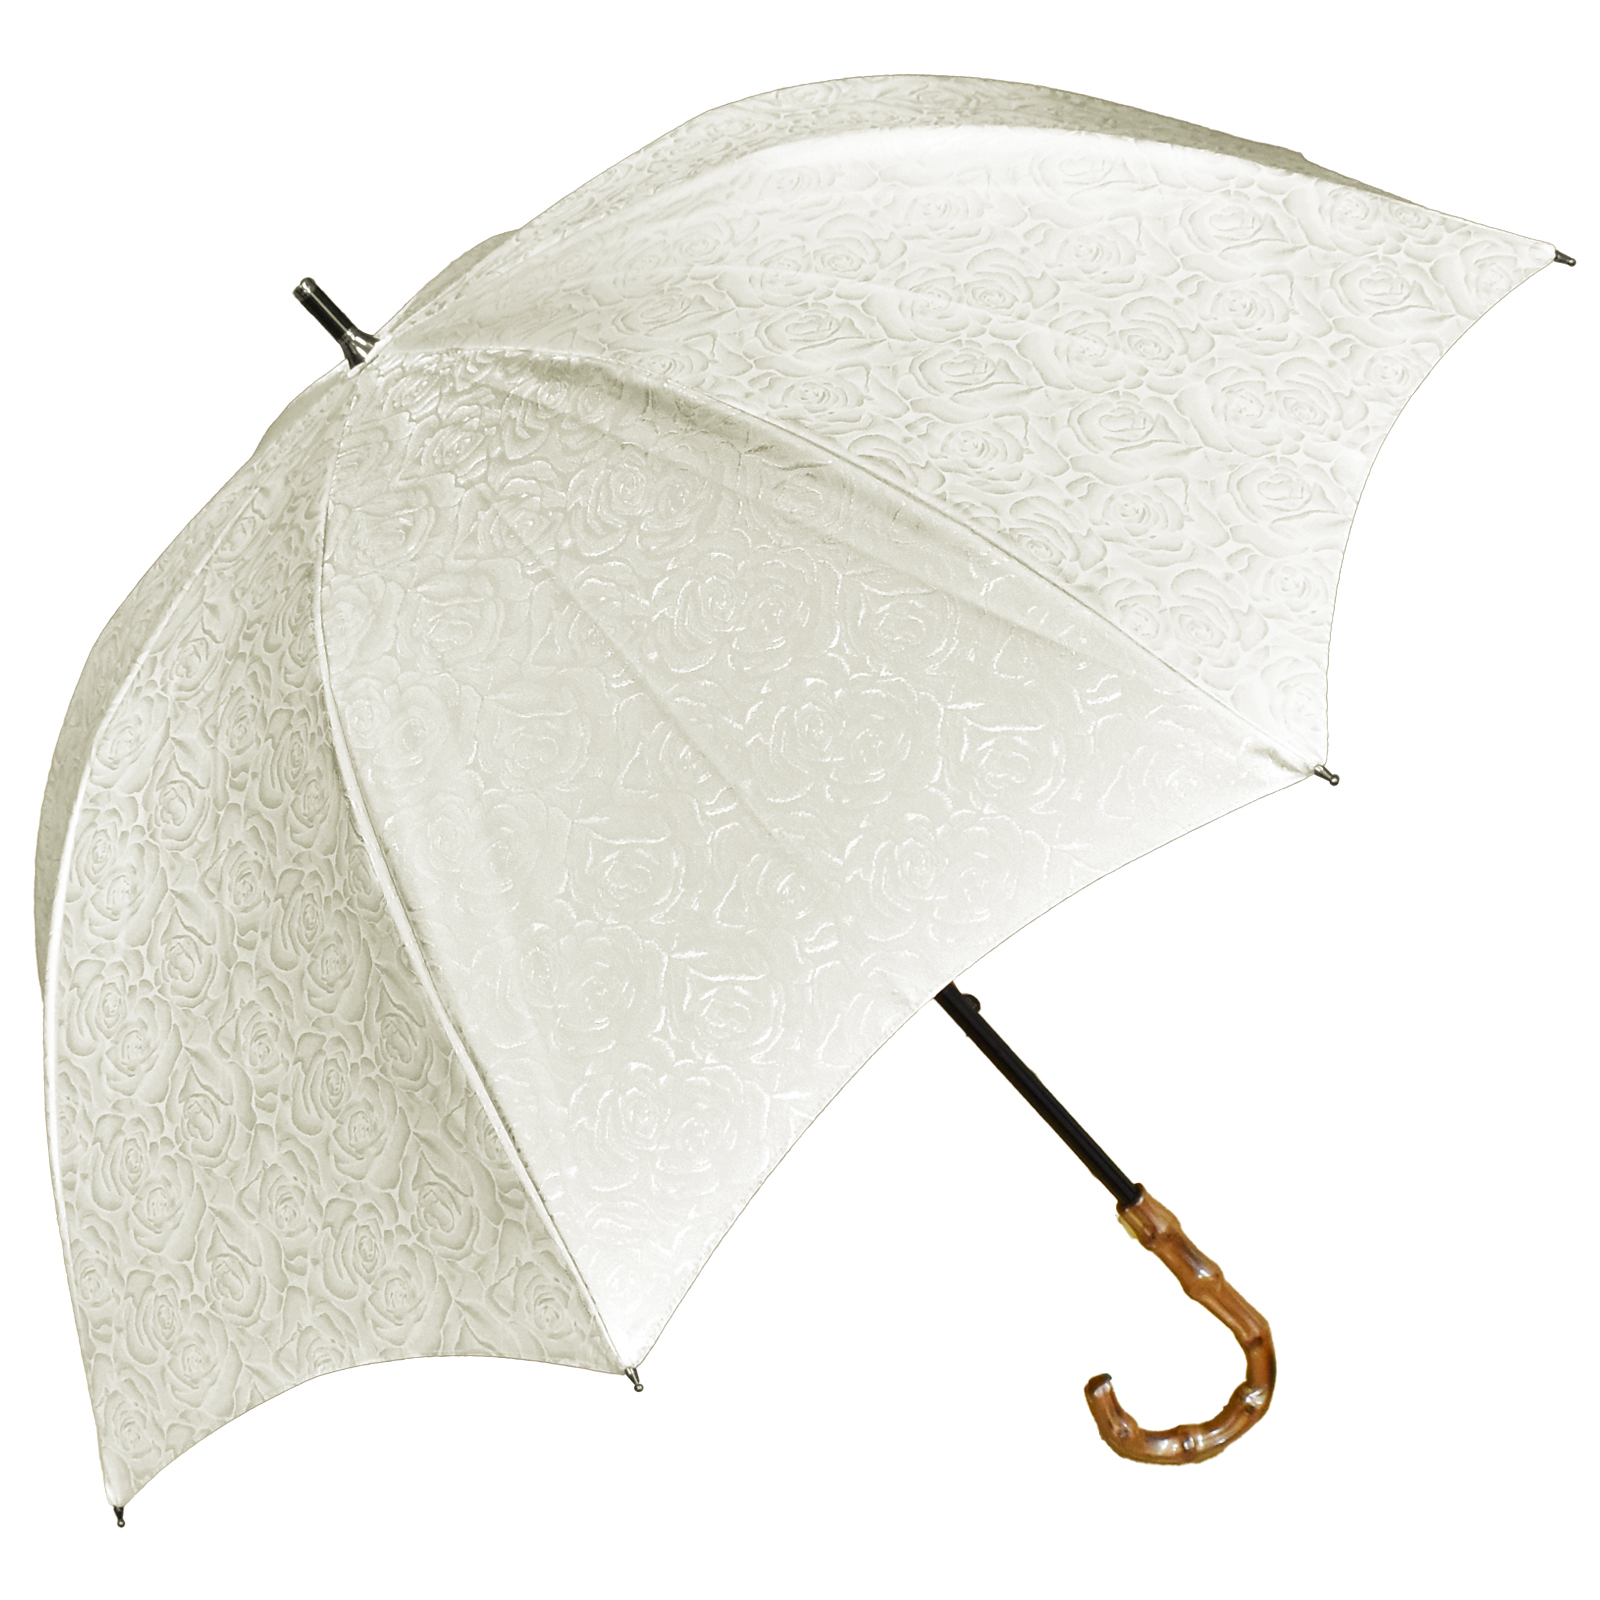 日傘 完全遮光 長傘 uv 晴雨兼用 1級遮光 遮熱 涼しい おしゃれ 軽量 完全遮光 プレーン ロ...